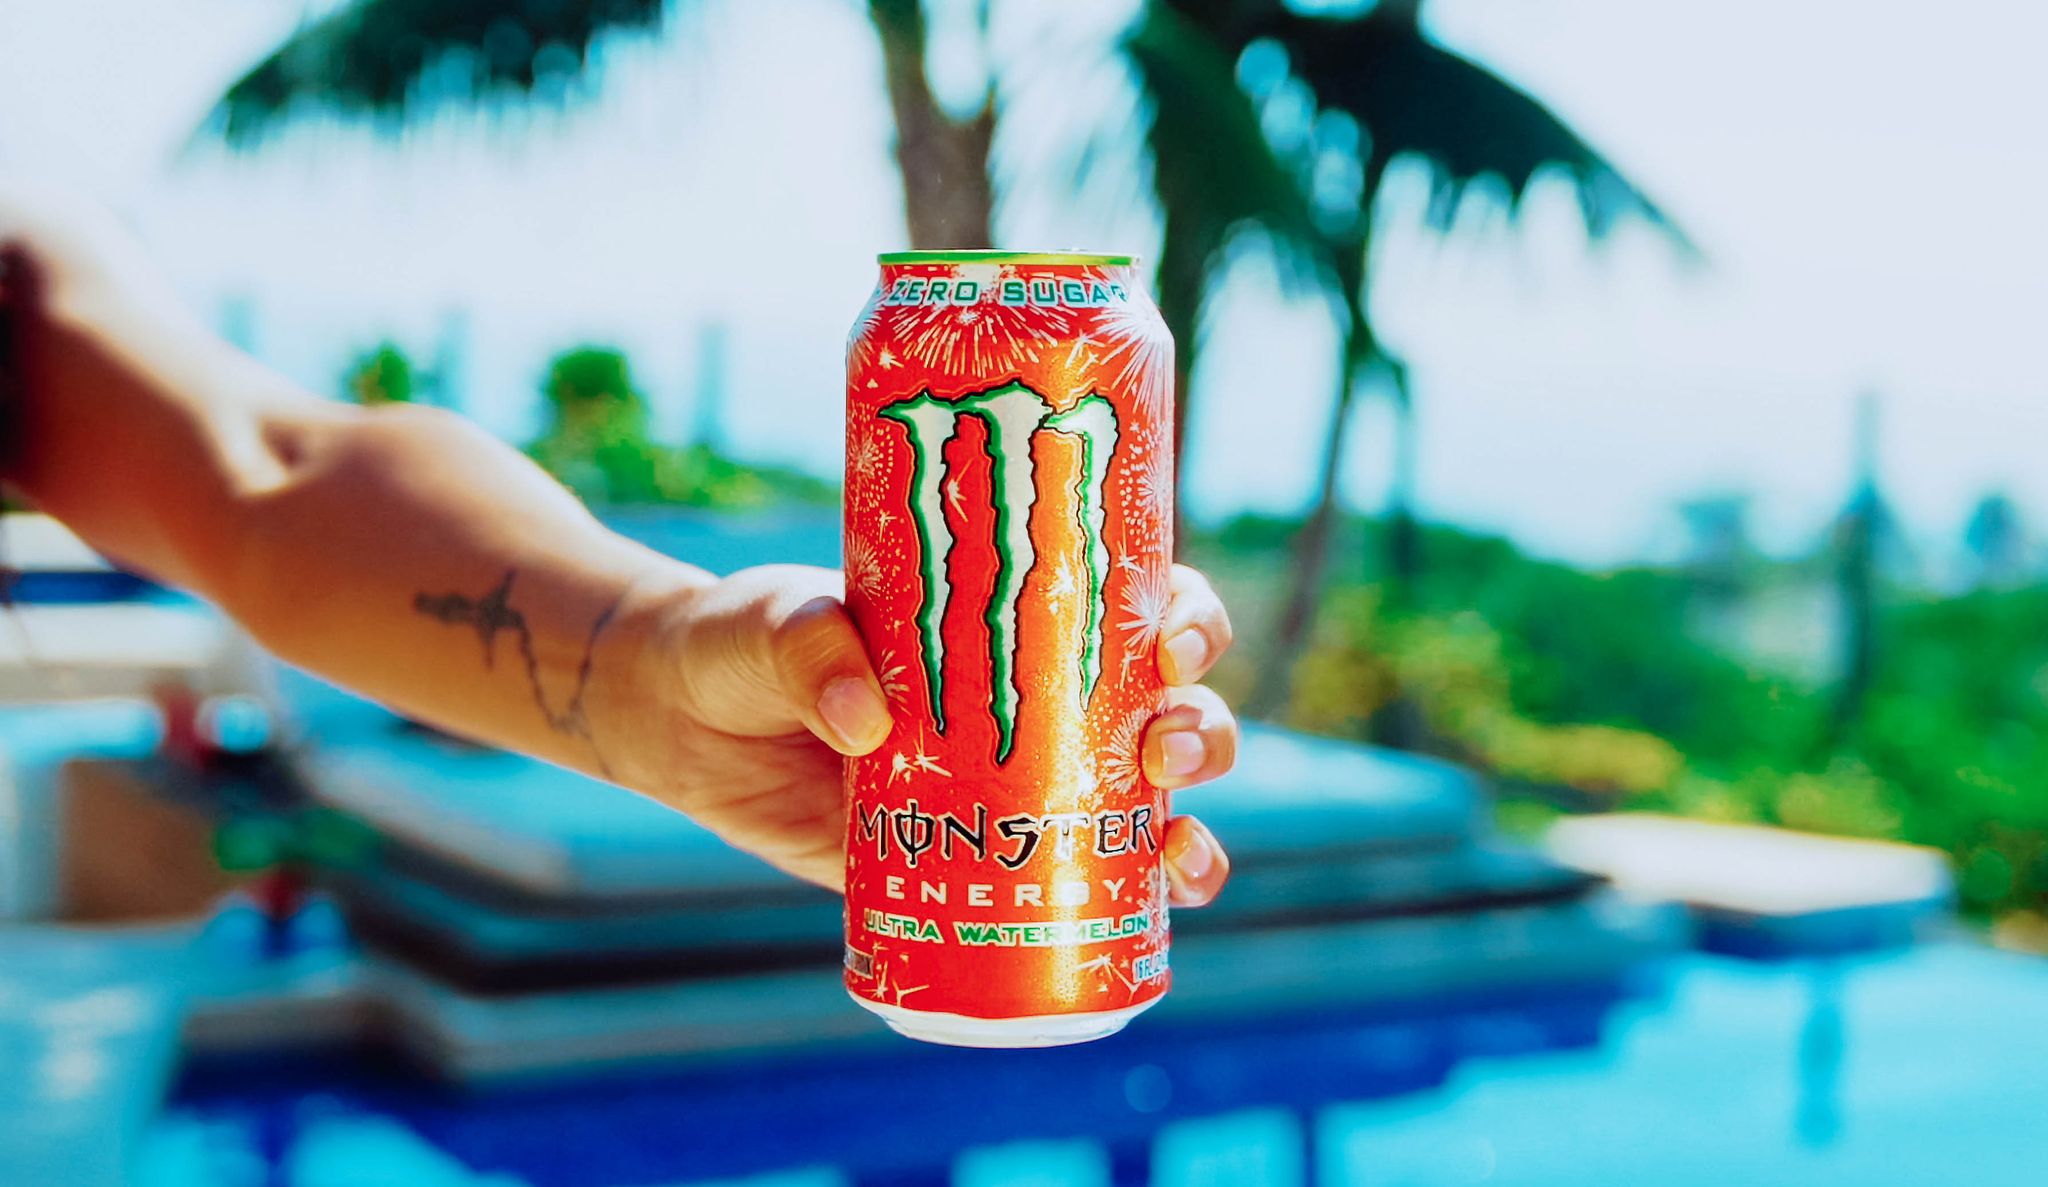 Best Monster Flavor: Ranking the 10 Best Monster Energy Drinks